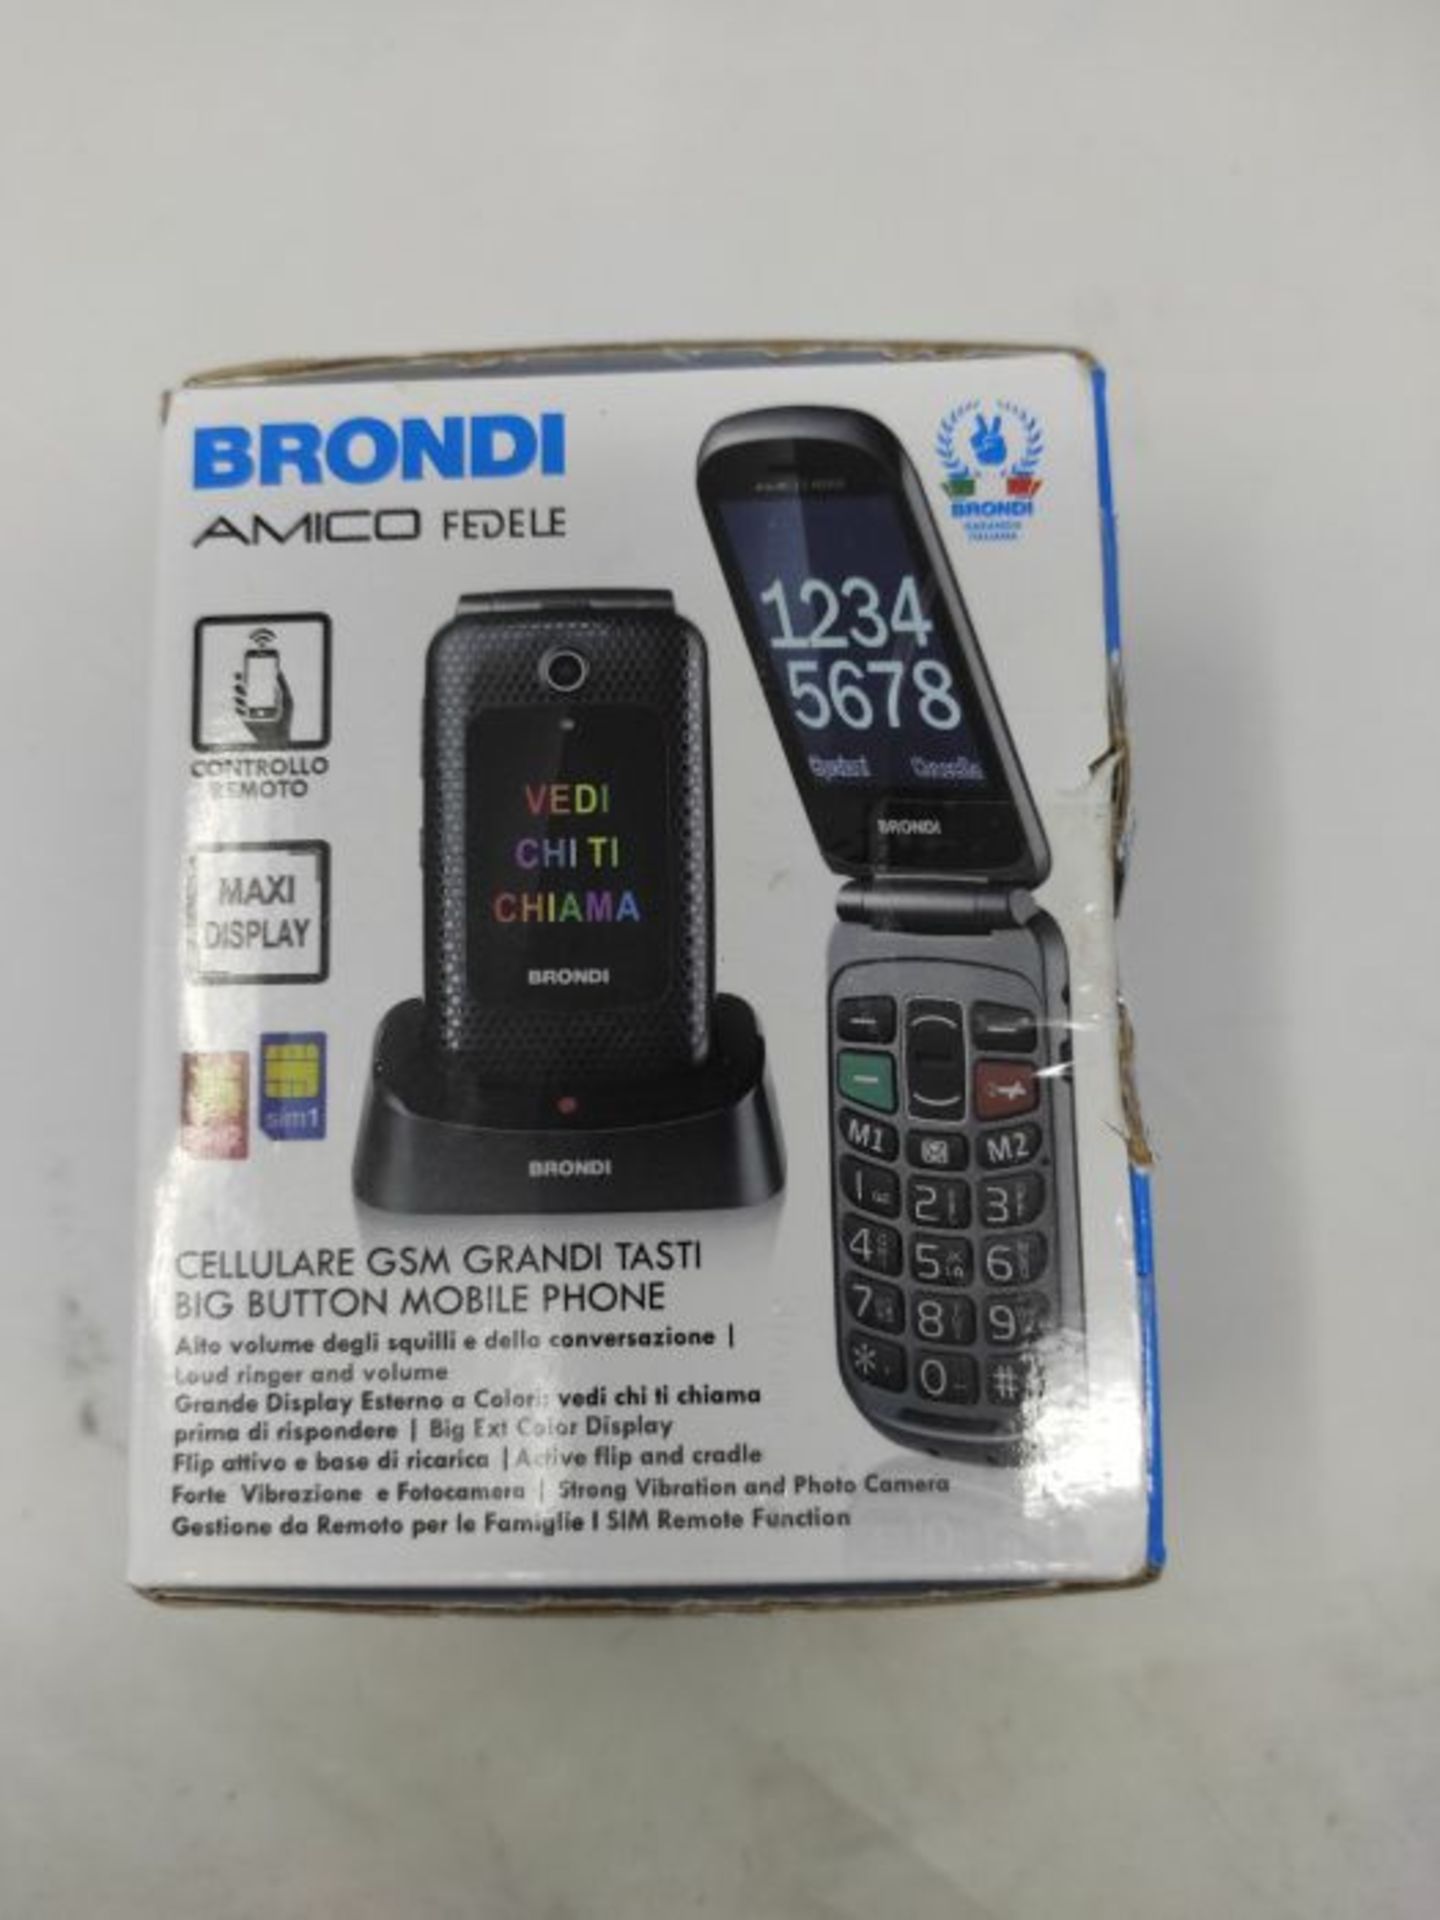 RRP £65.00 Brondi Amico Fedele, Telefono cellulare GSM per anziani con tasti grandi, tasto SOS e - Image 2 of 3